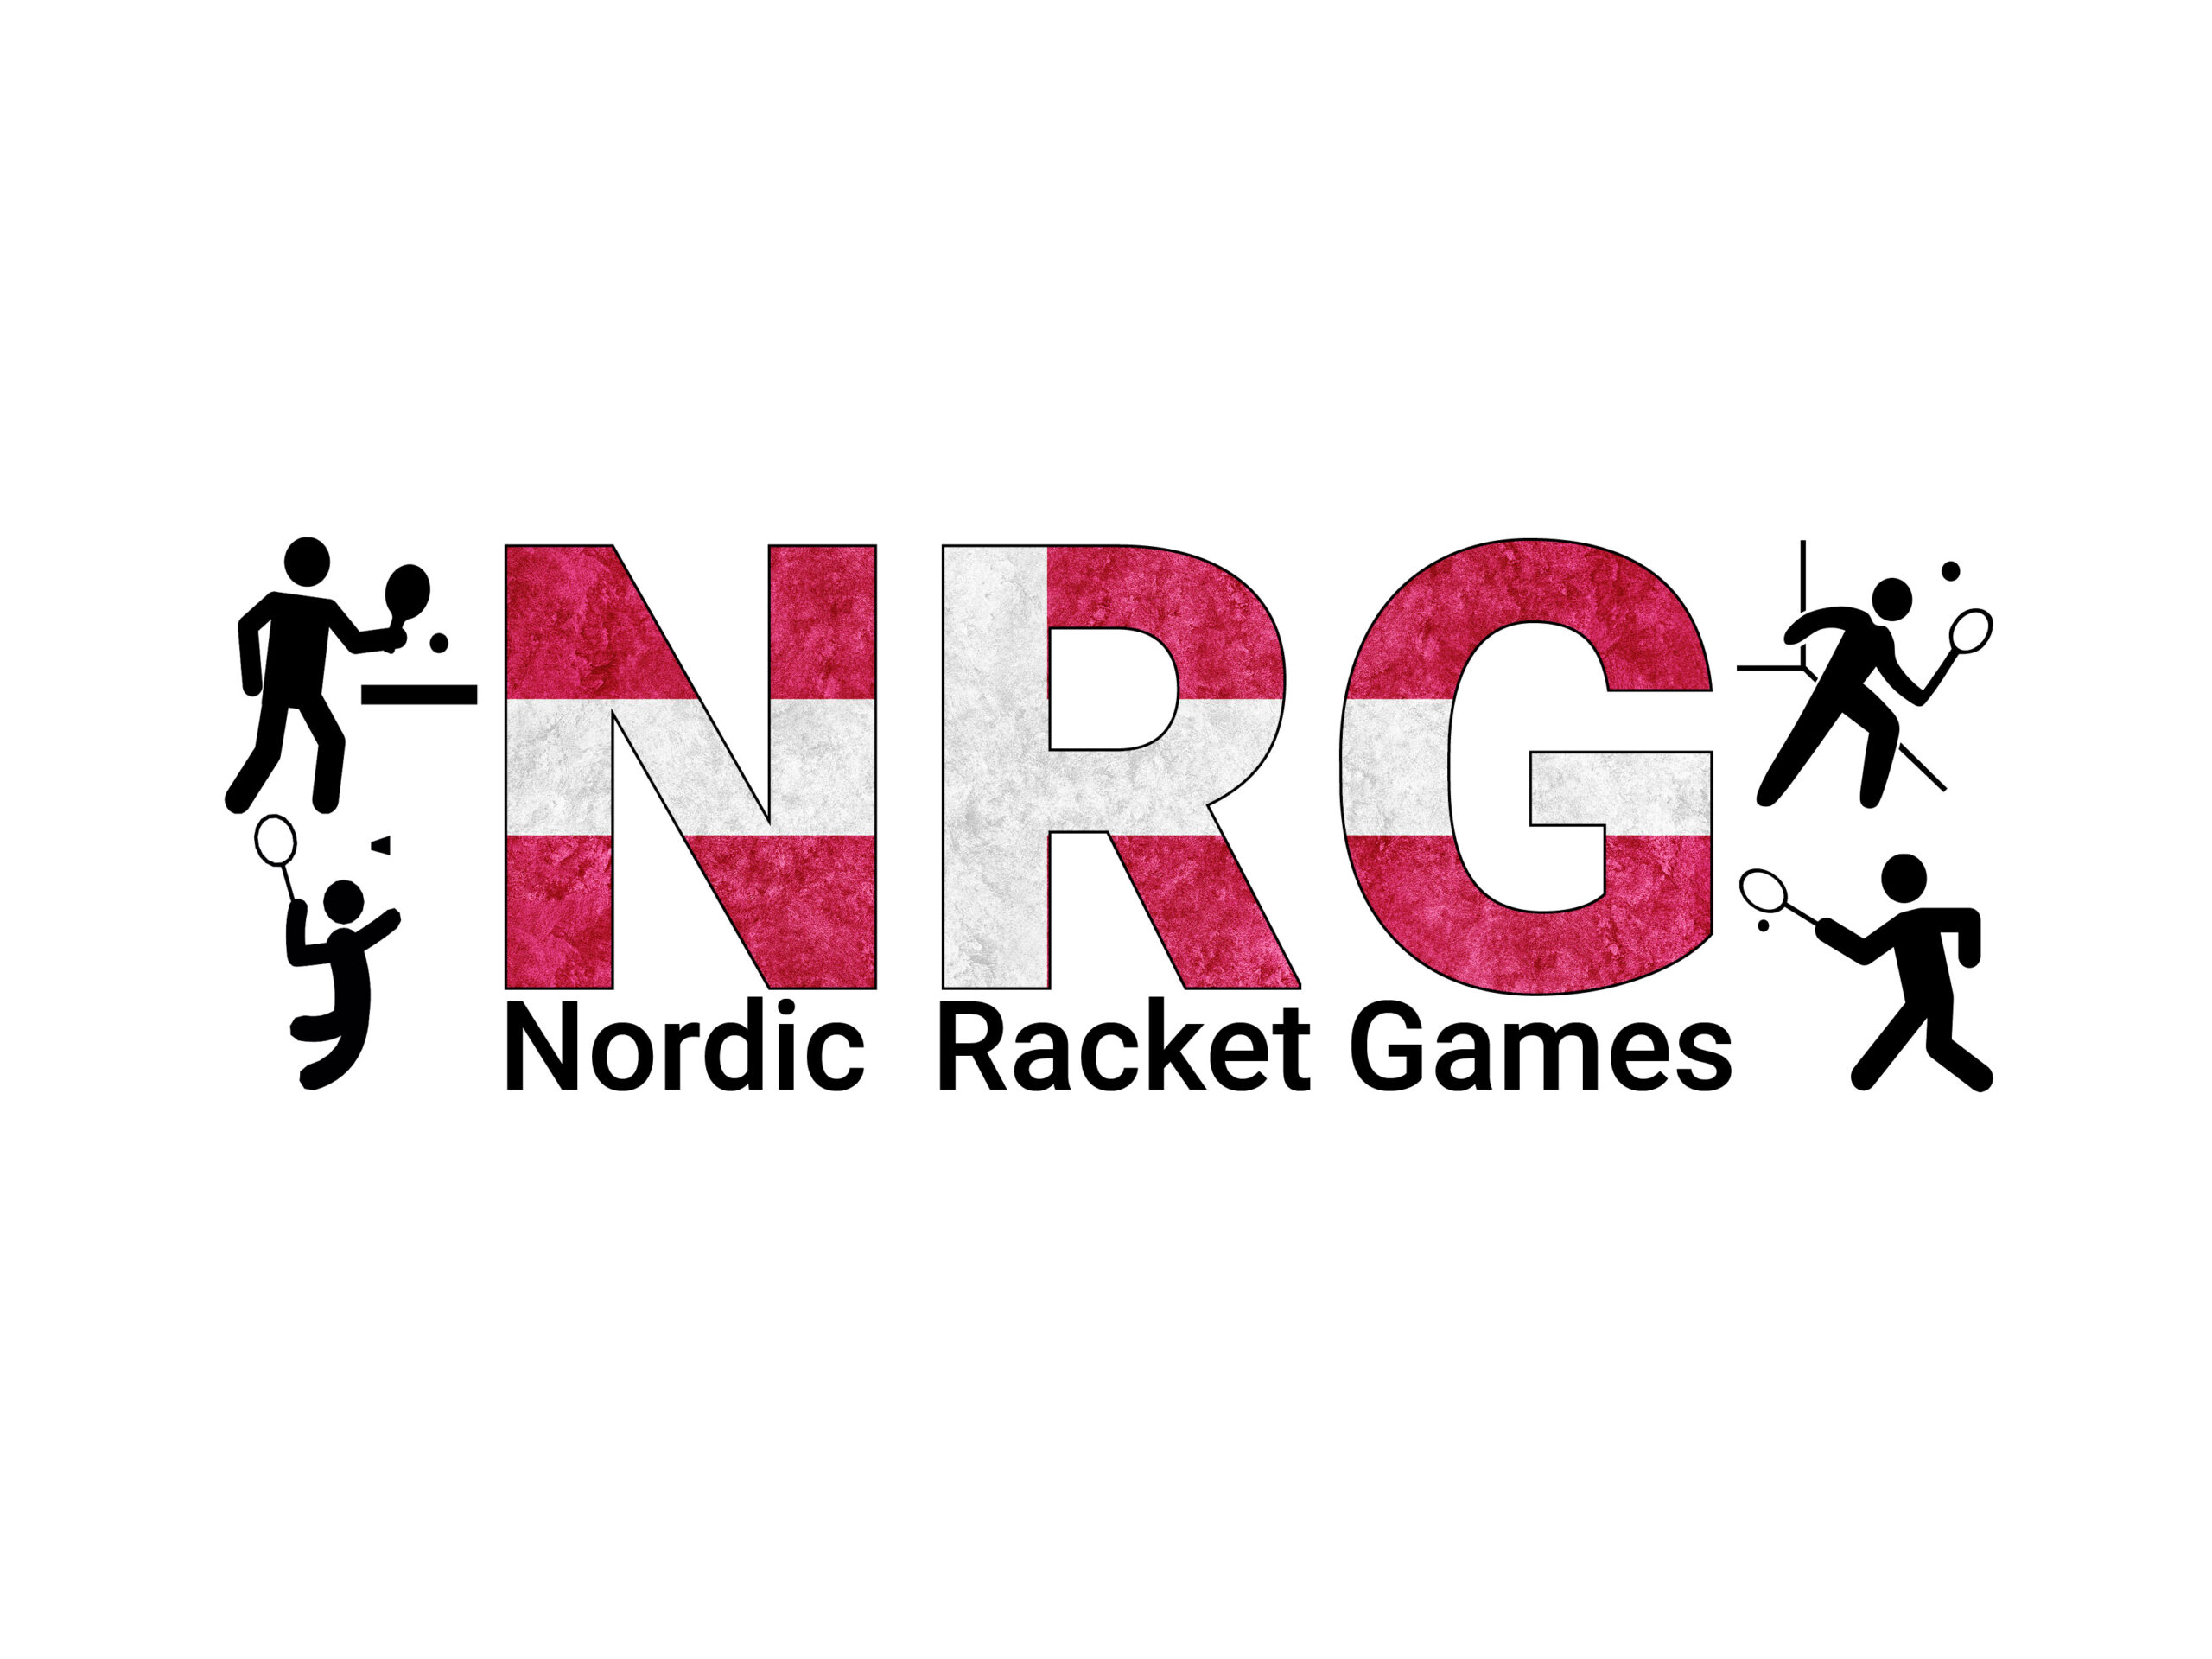 Nordic Racket Games